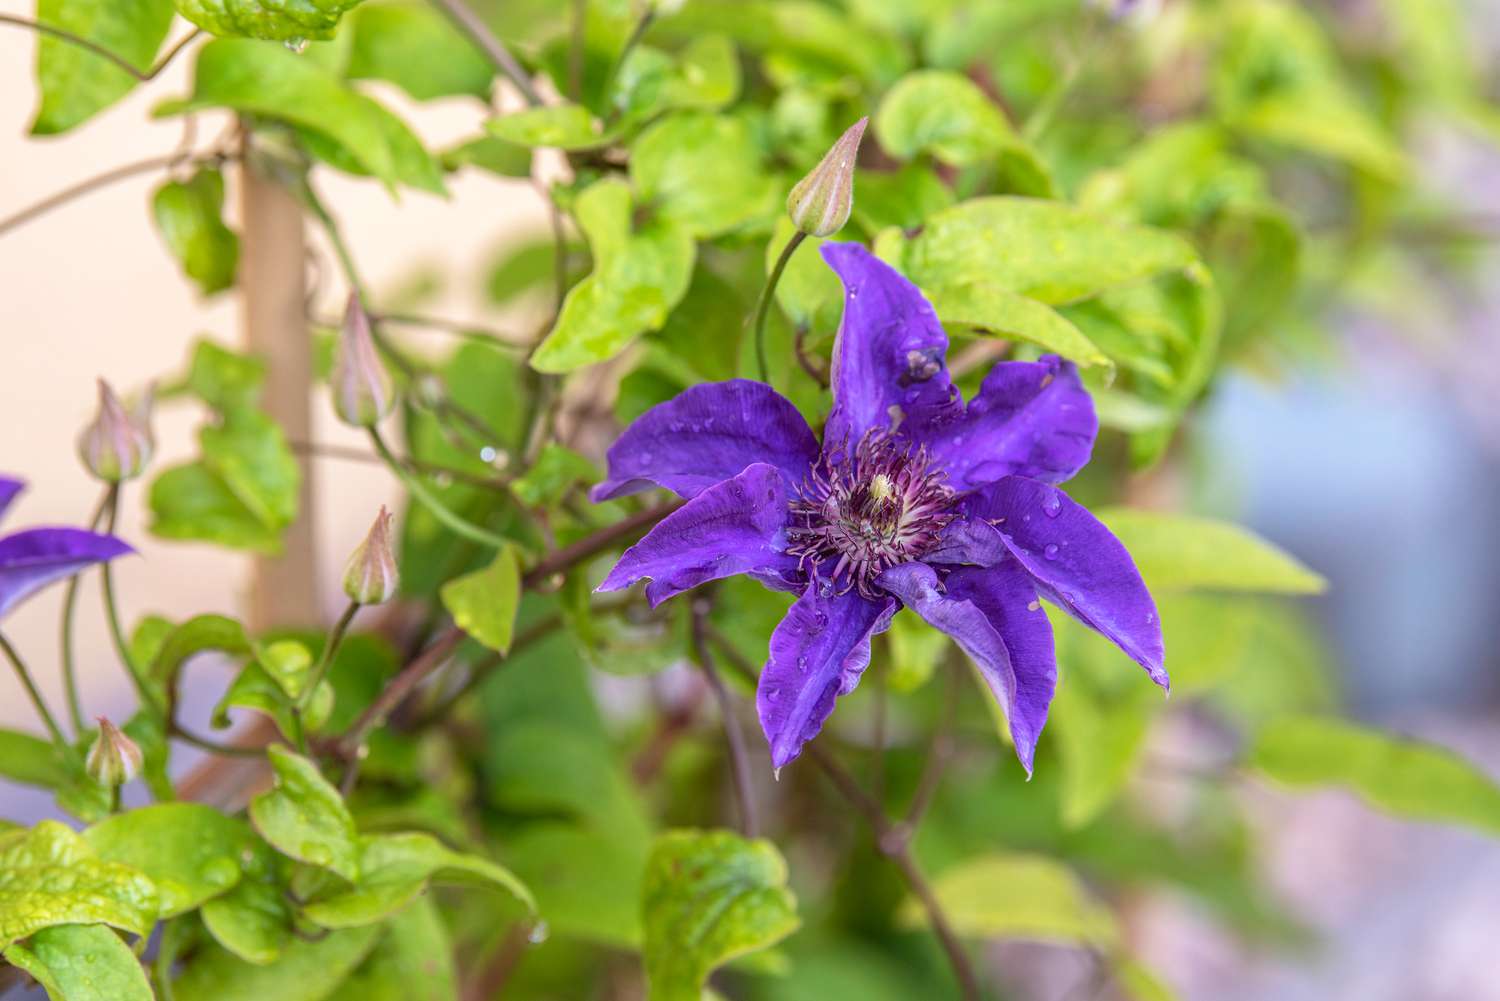 Planta Clematis 'El Presidente' con flor azul violácea con anteras rojizas en el centro creciendo en enredadera